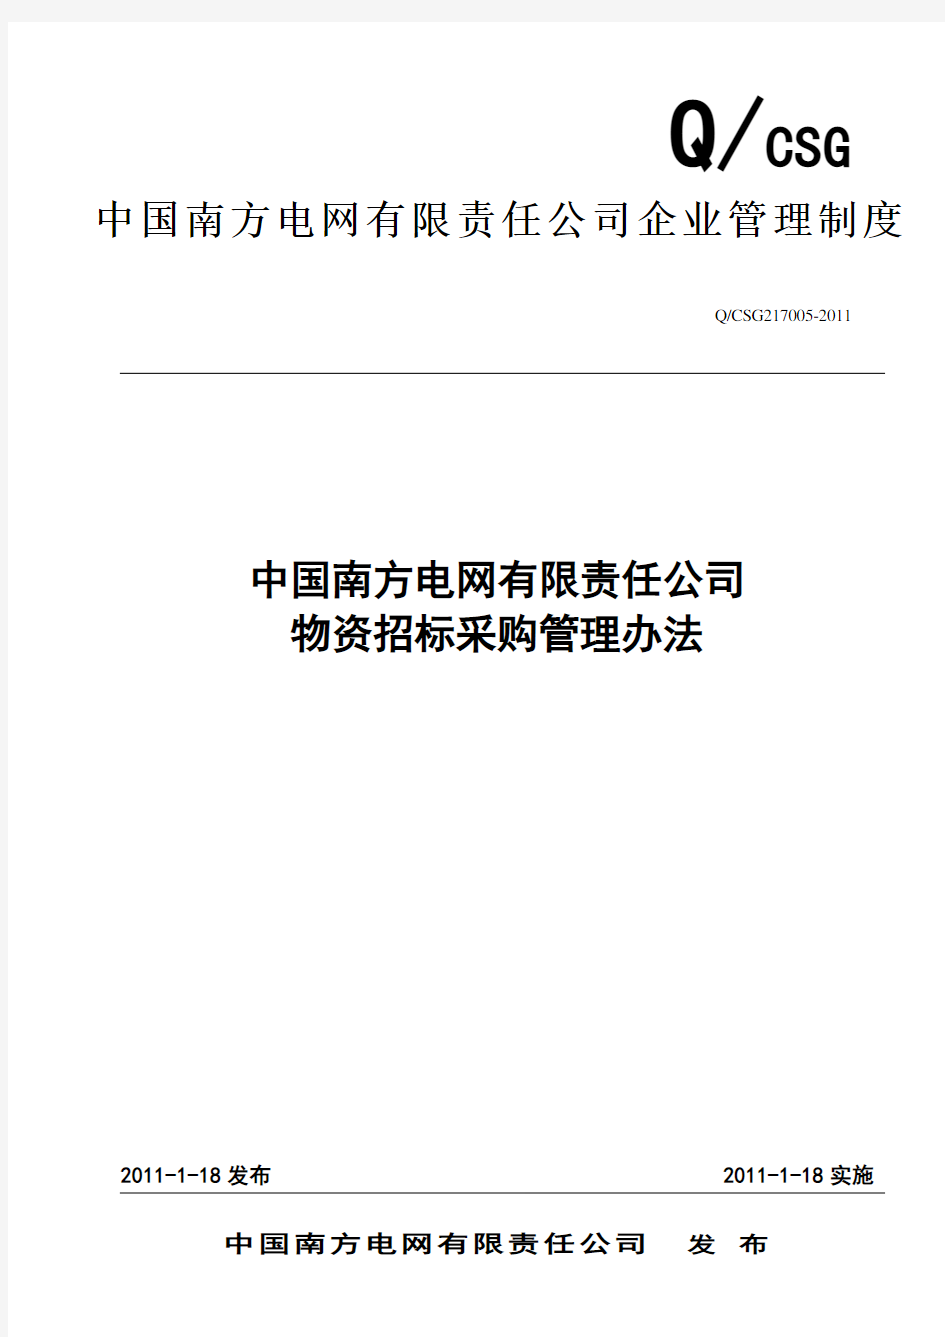 中国南方电网有限责任公司物资招标采购管理办法